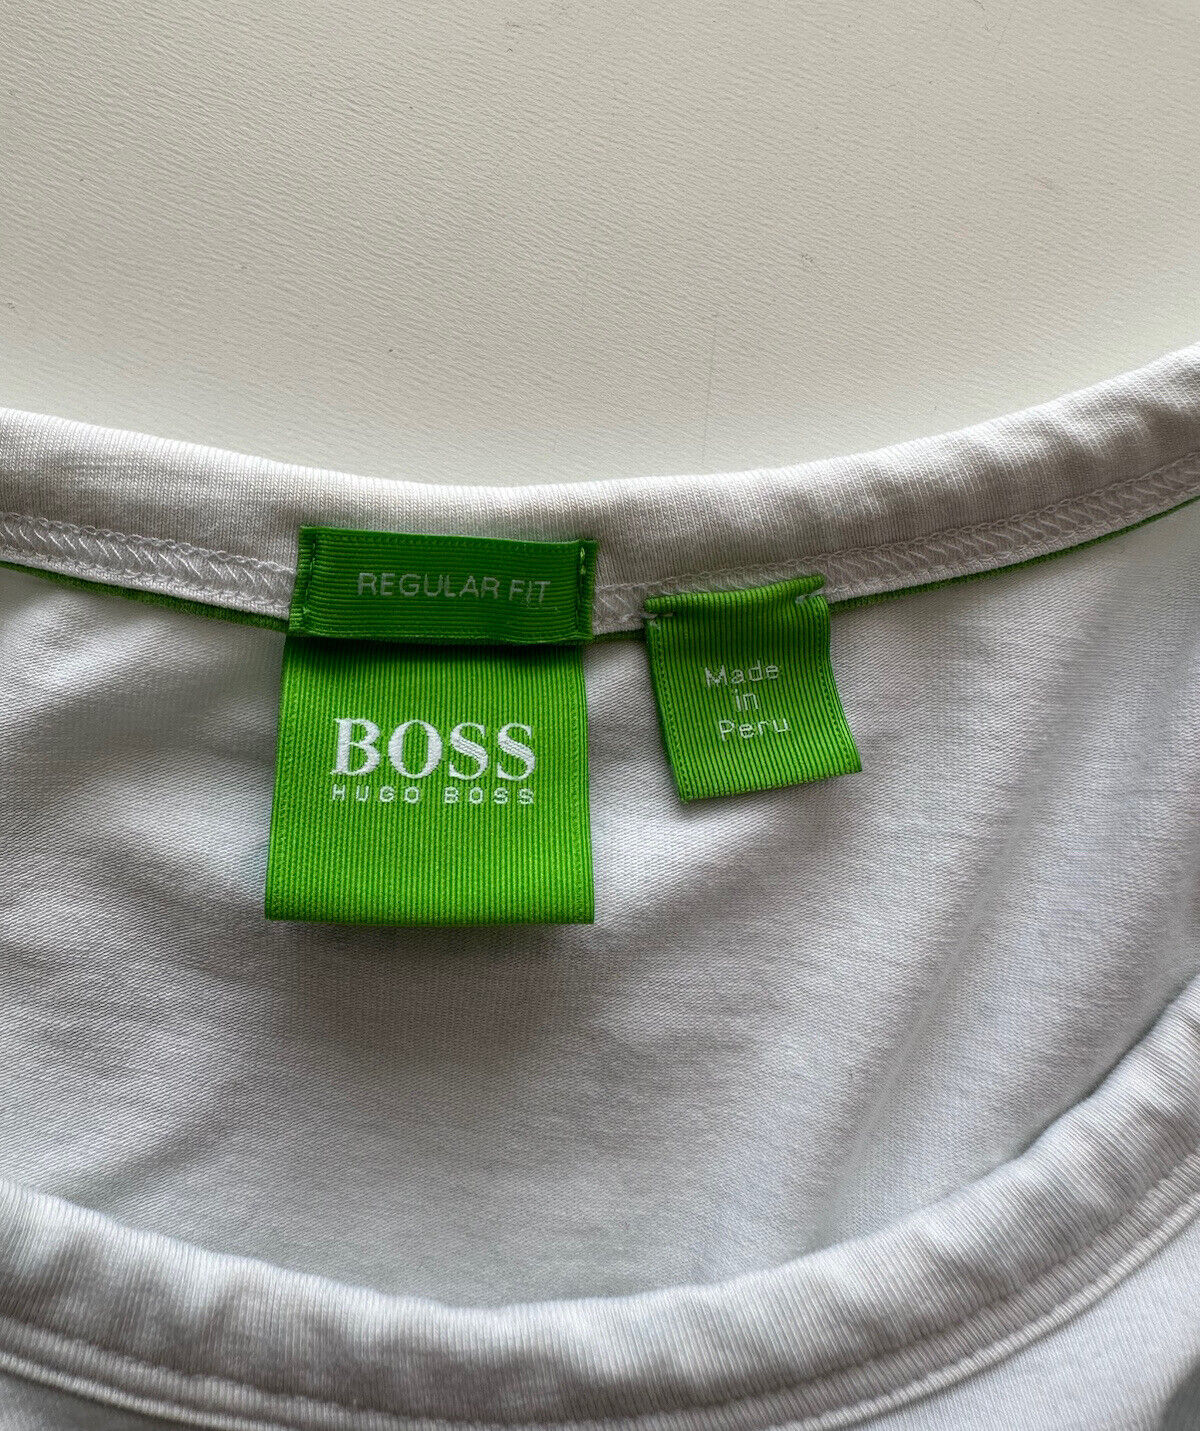 Boss Hugo Boss Green Label Logo Short Sleeve White T-Shirt L (Fits like Medium)